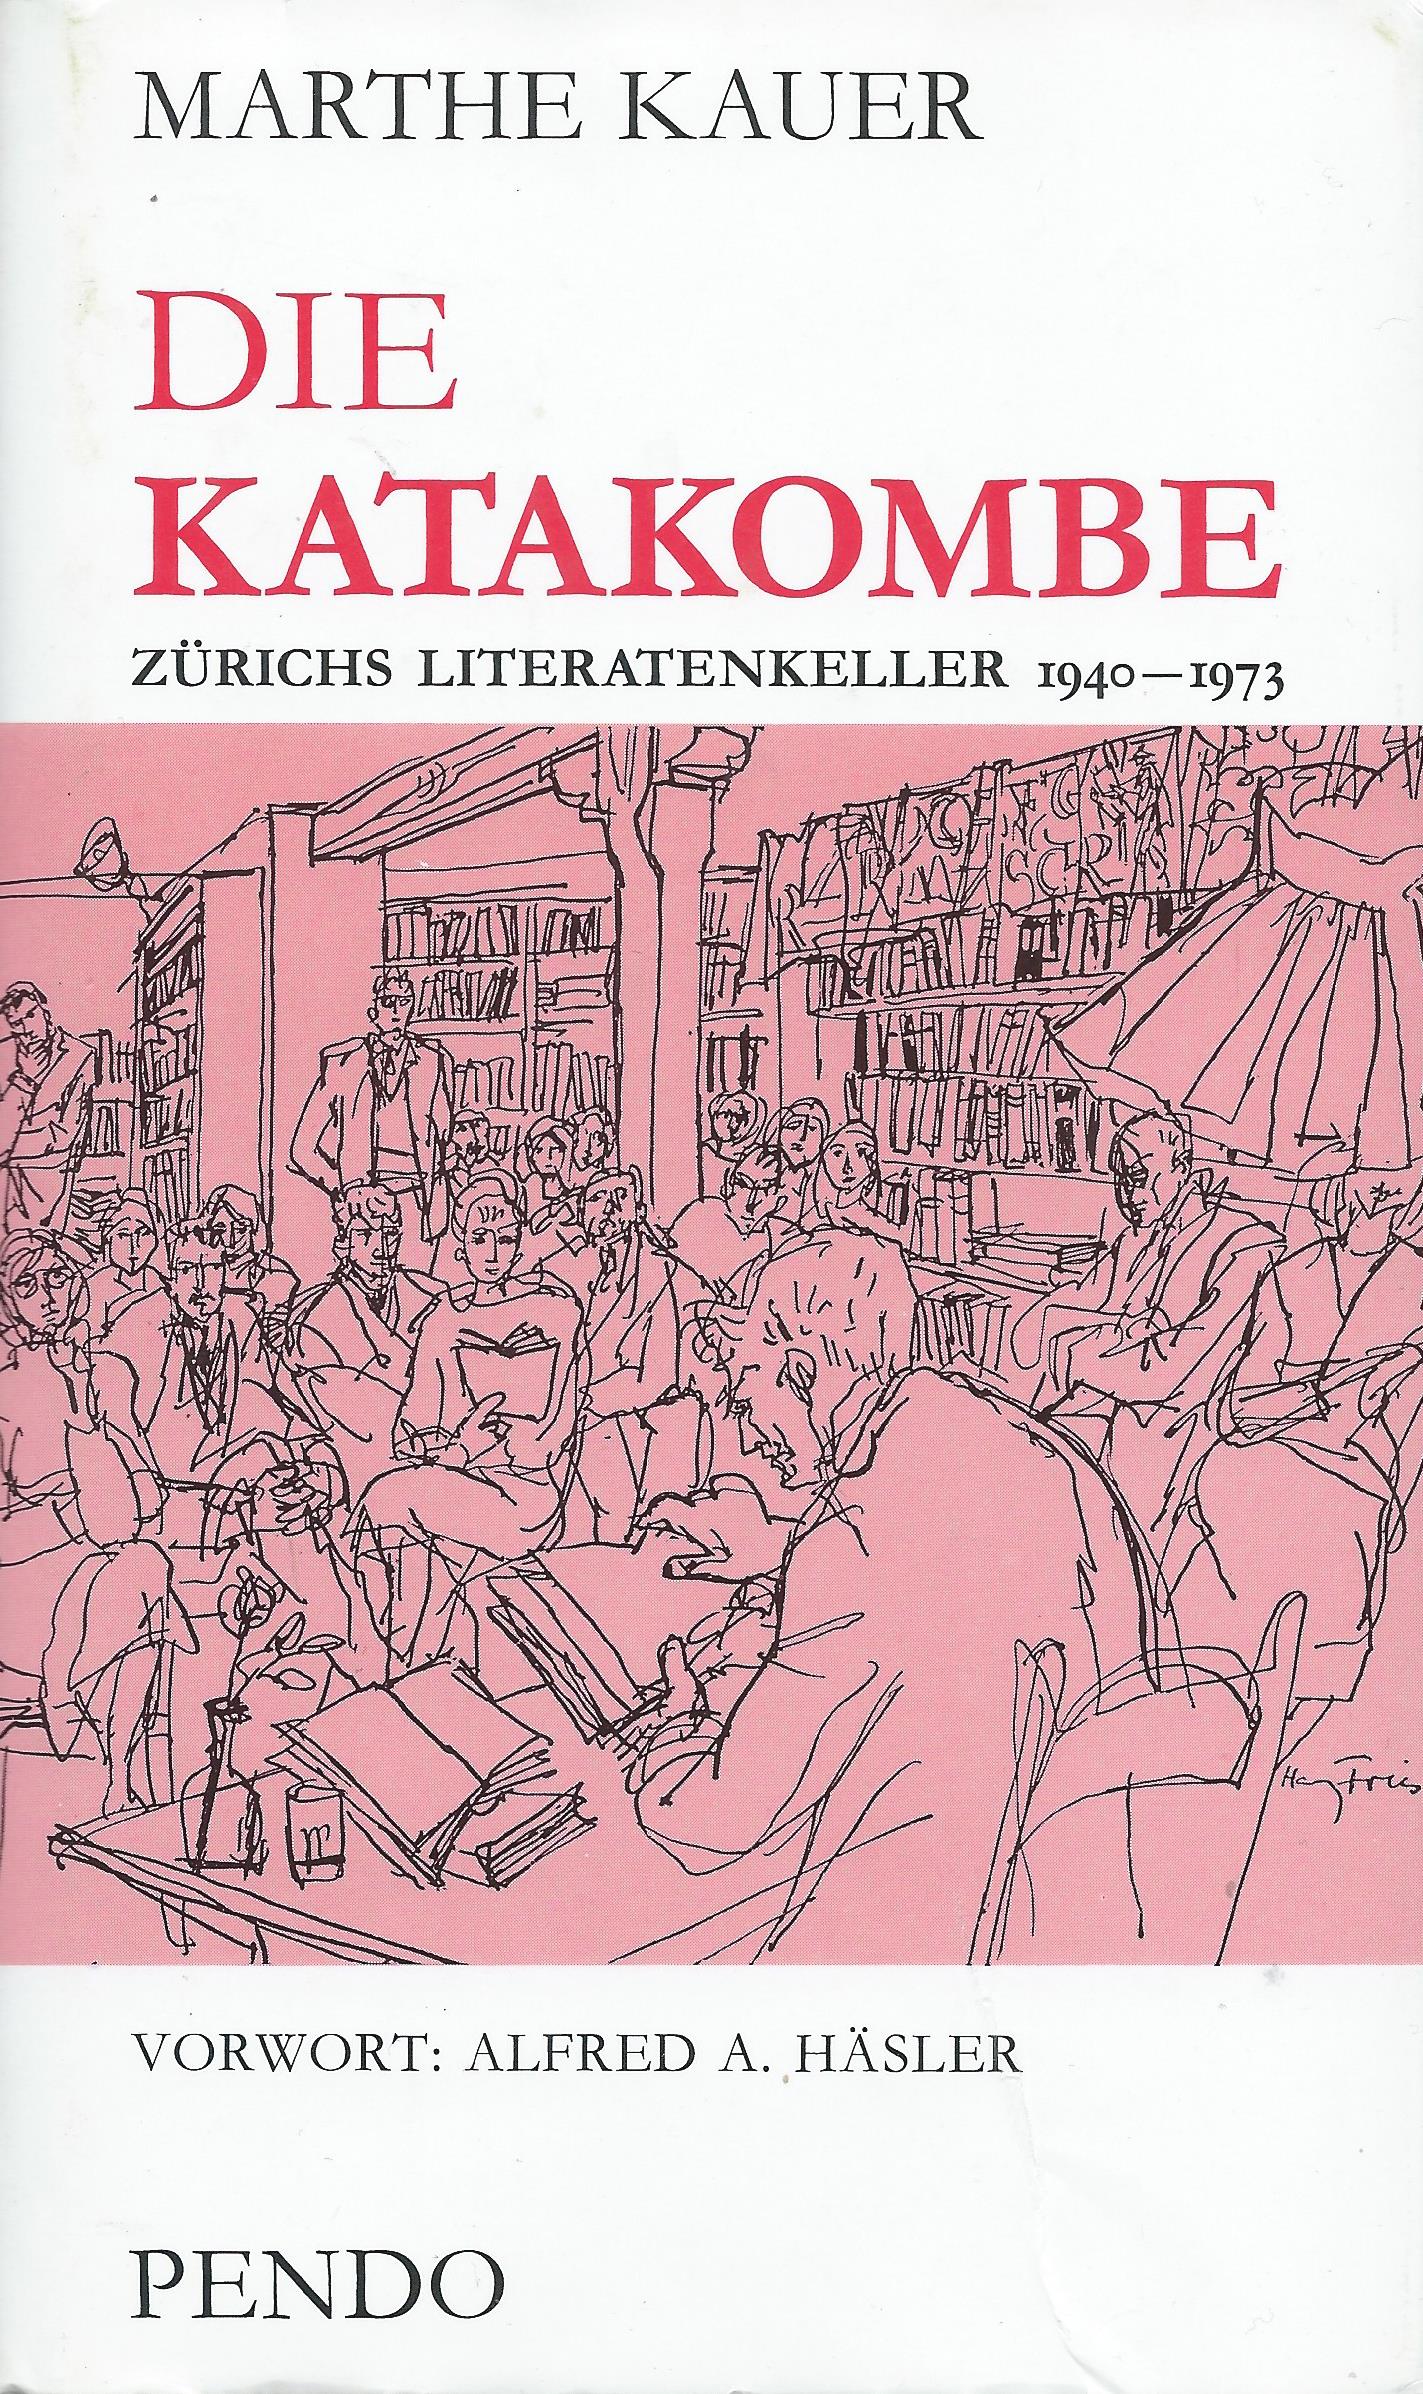 Marthe Kauer: Die Katakombe – Zürichs Literatenkeller 1940 – 1973